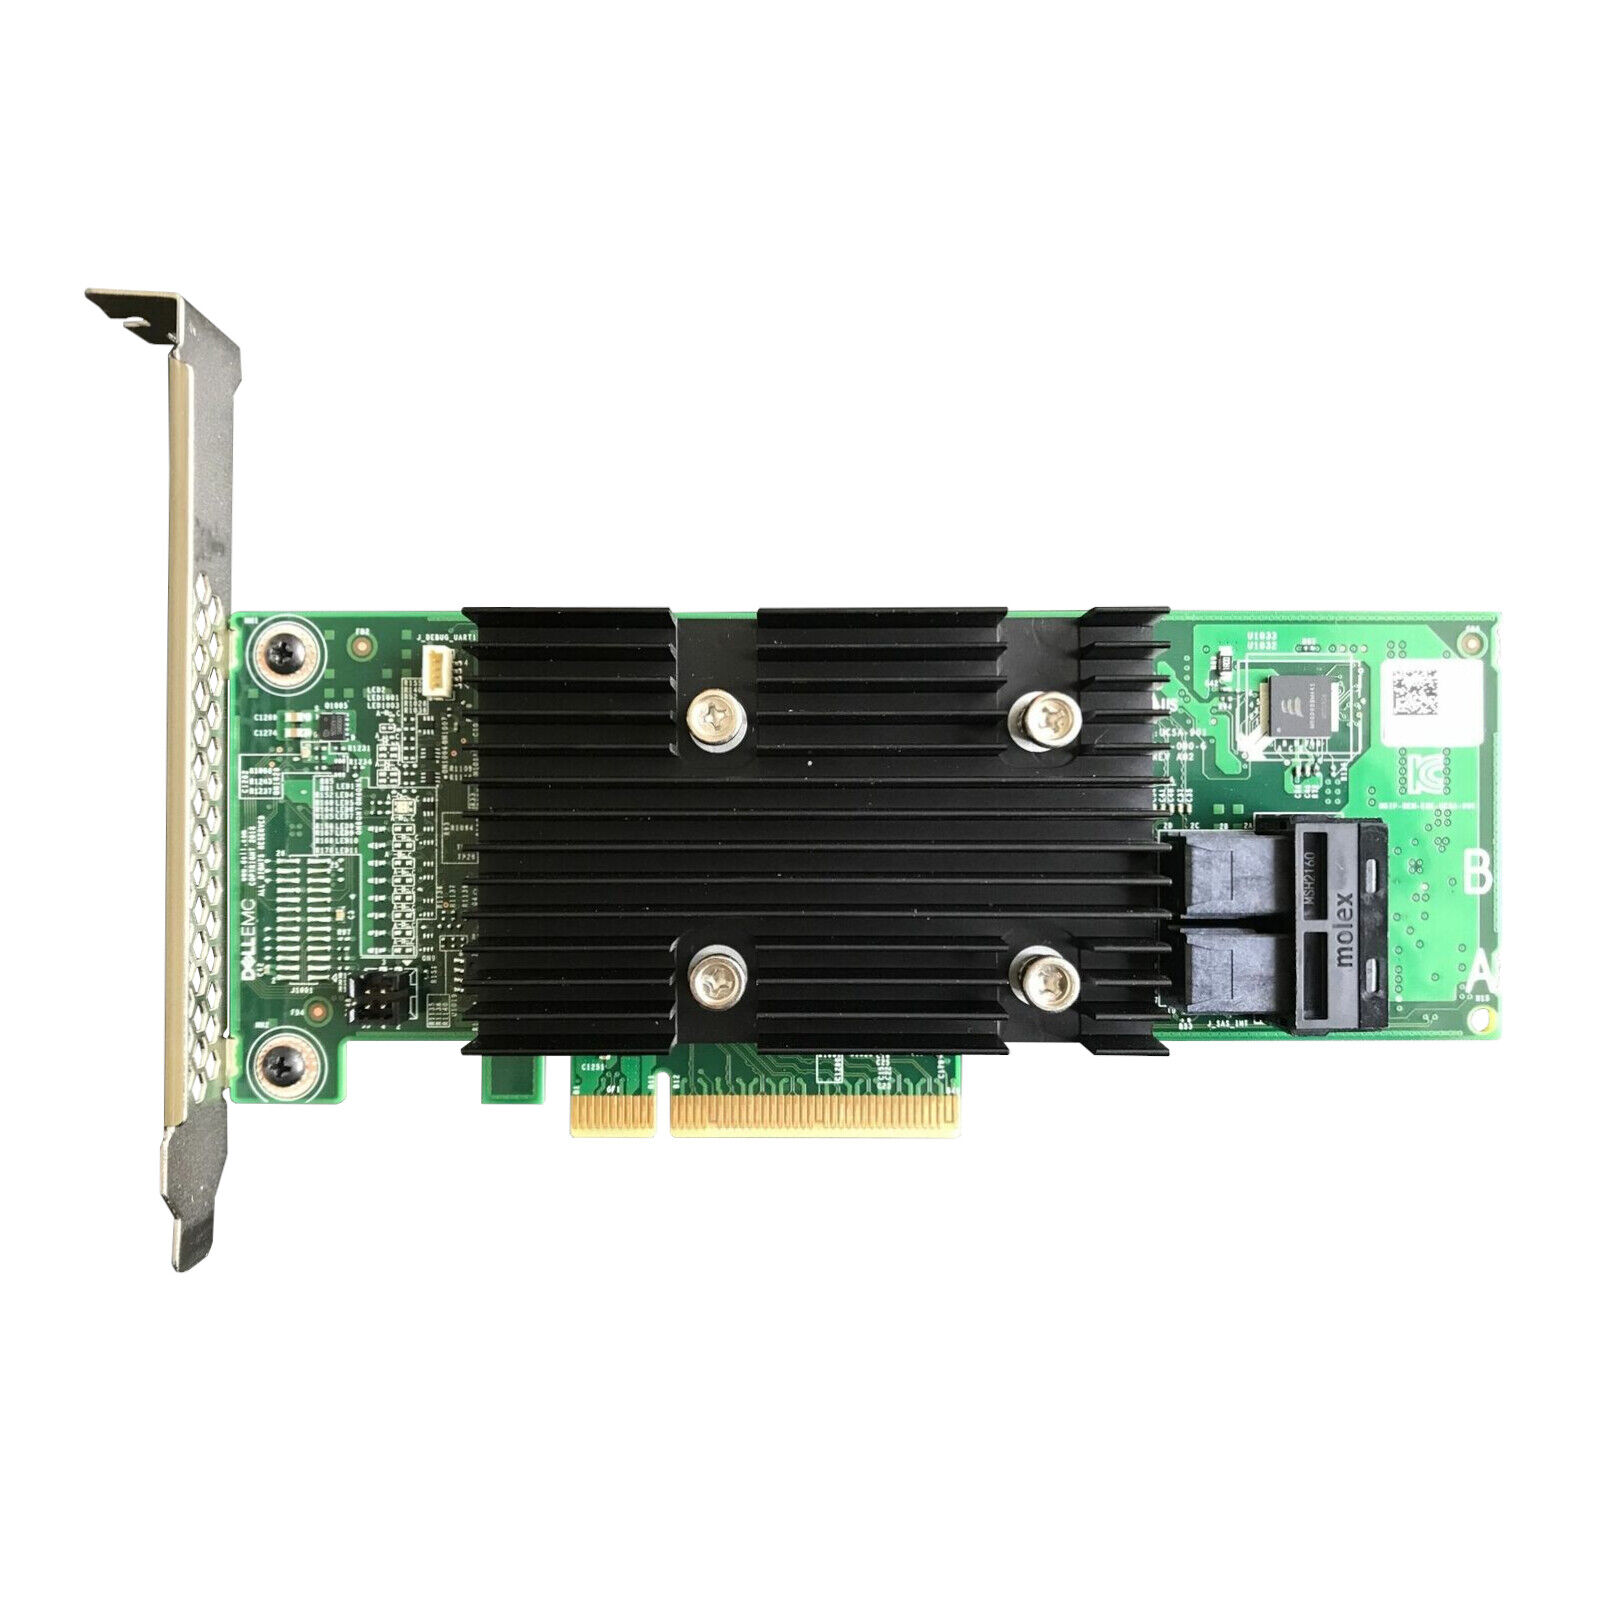 Dell HBA330 12GBPS SAS Internal HBA Controller (NON-RAID) PCIe Card J7TNV 0J7TNV